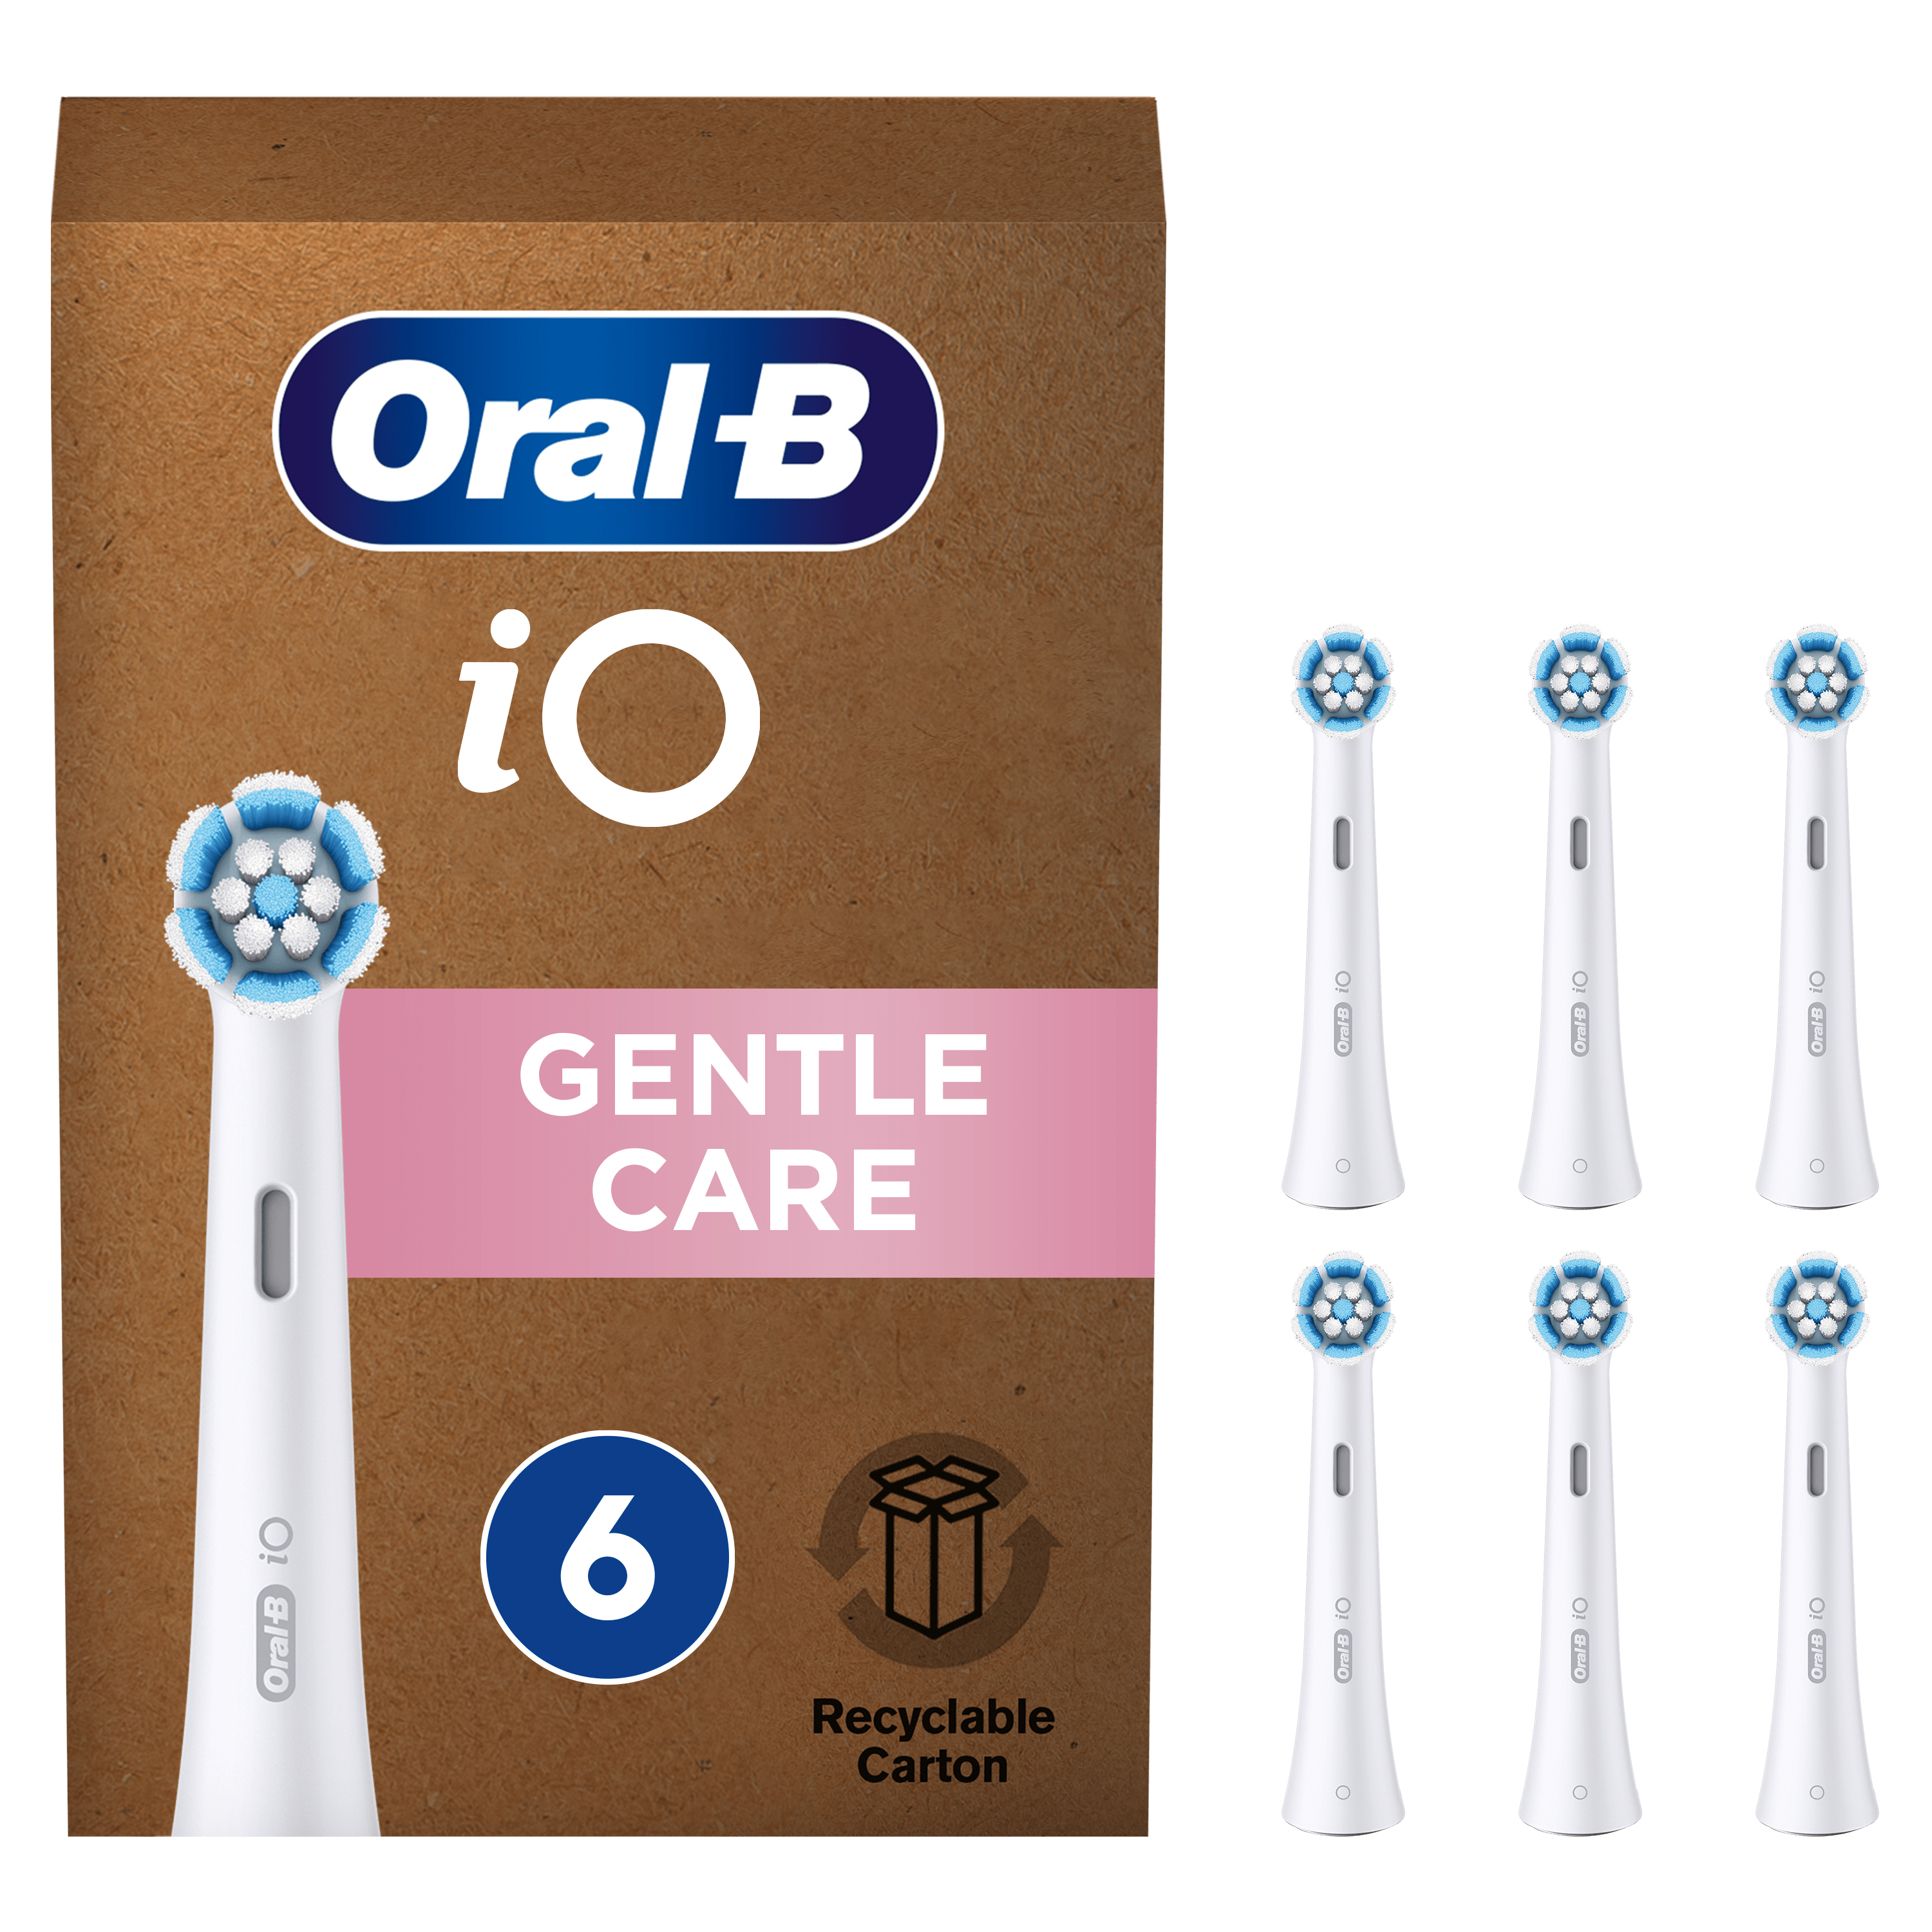 Cabezales de repuesto para cepillo de dientes Oral B iO, recambio